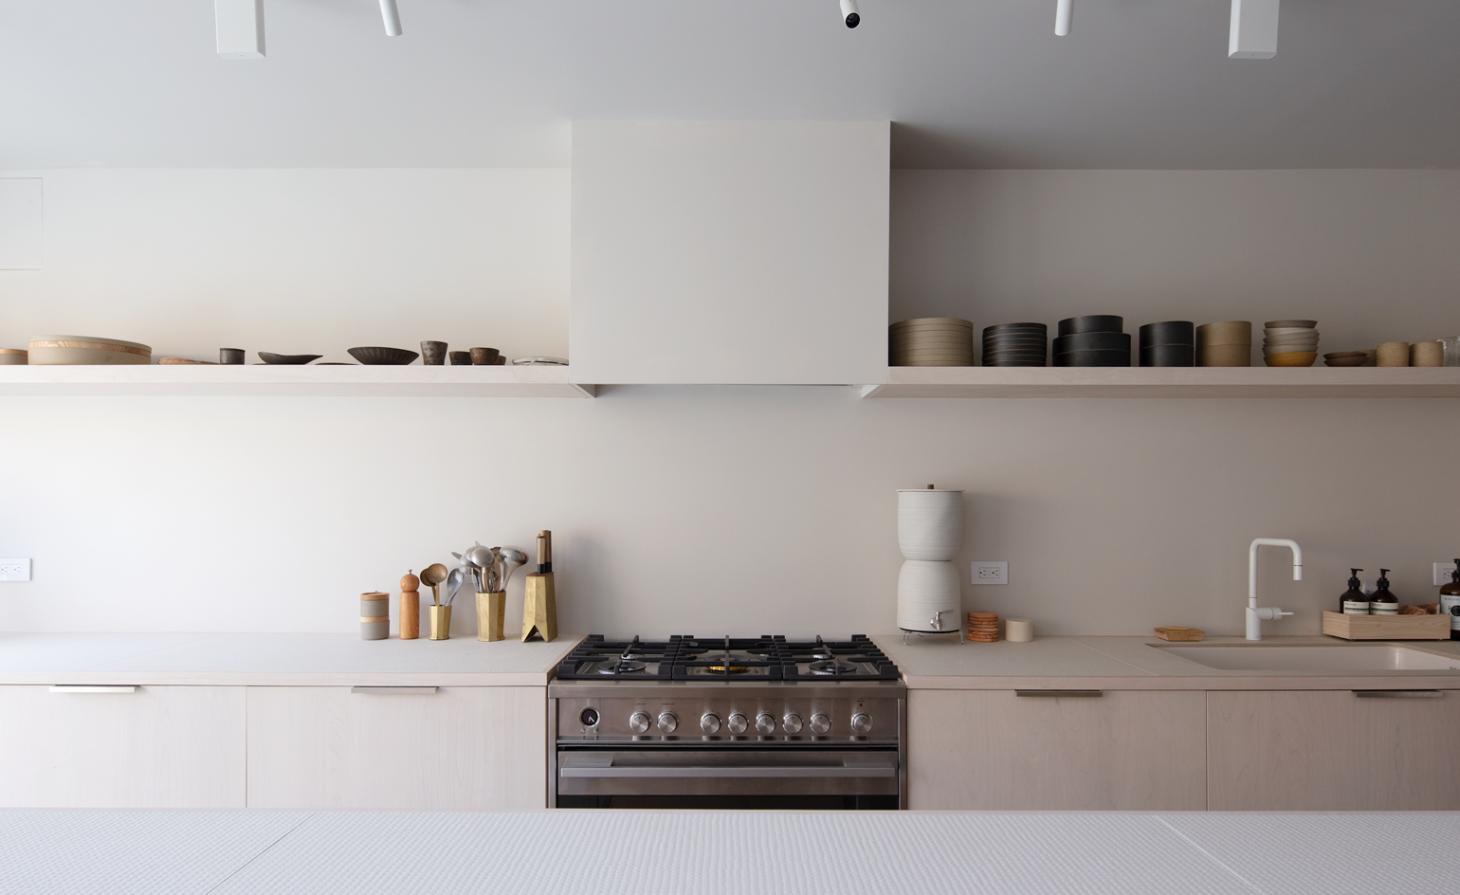 Không gian phòng bếp đơn giản, tiện nghi và sạch sẽ. Những chiếc kệ mở thay thế cho hệ thống tủ trên cho cái nhìn rộng thoáng, hơn nữa cũng đóng vai trò là nơi trưng bày bộ sưu tập bát đĩa đẹp mắt.